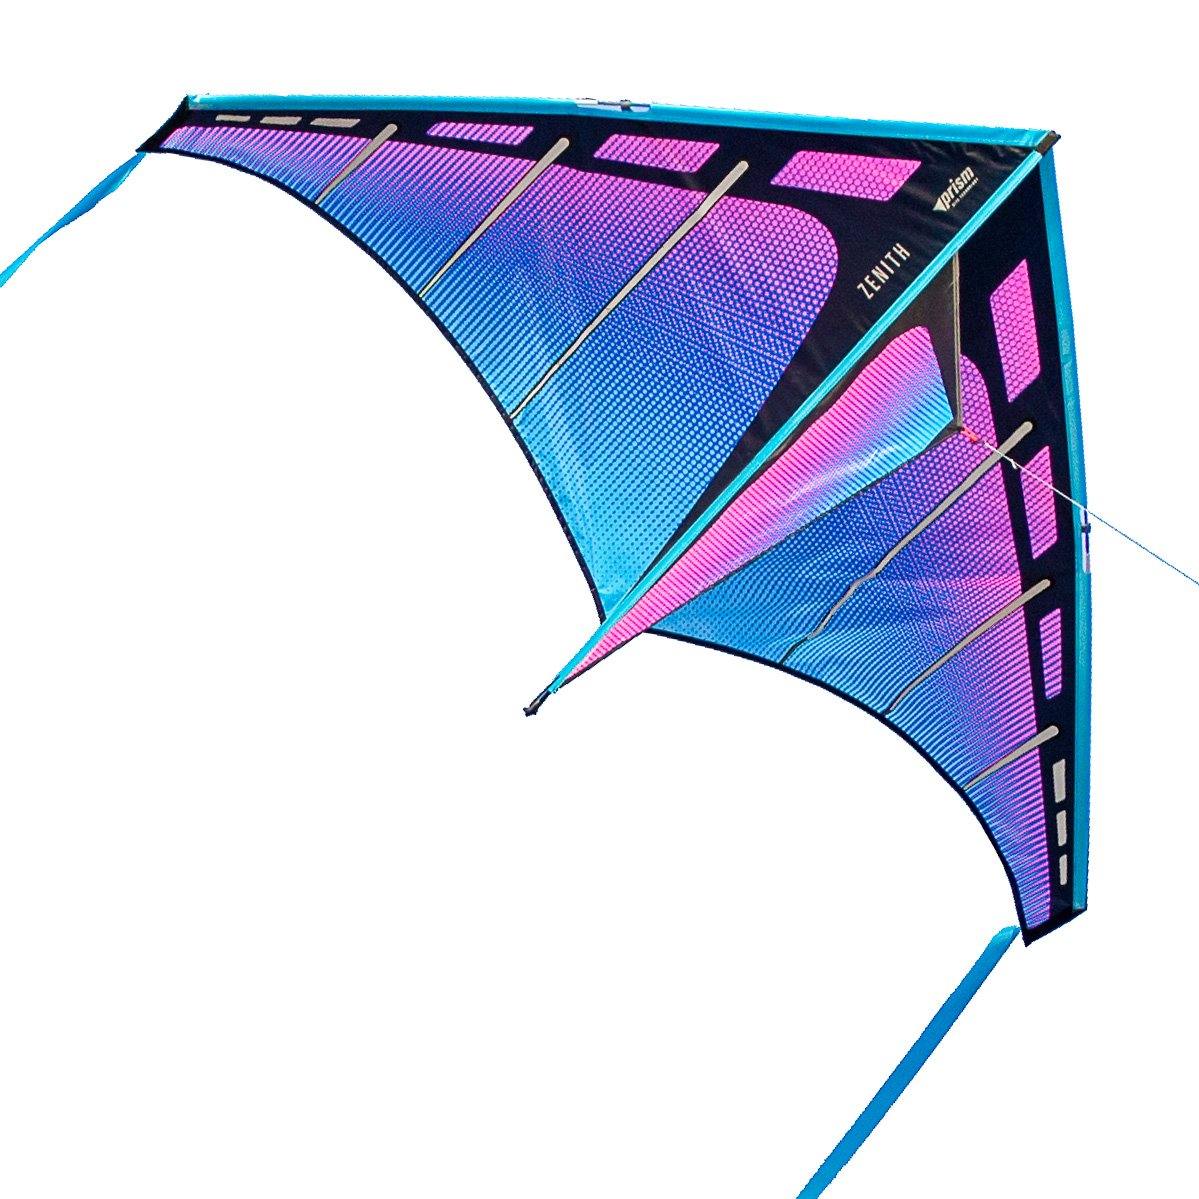 Prism Zenith 5 Single Line Delta Kite – Kitty Hawk Kites Online Store